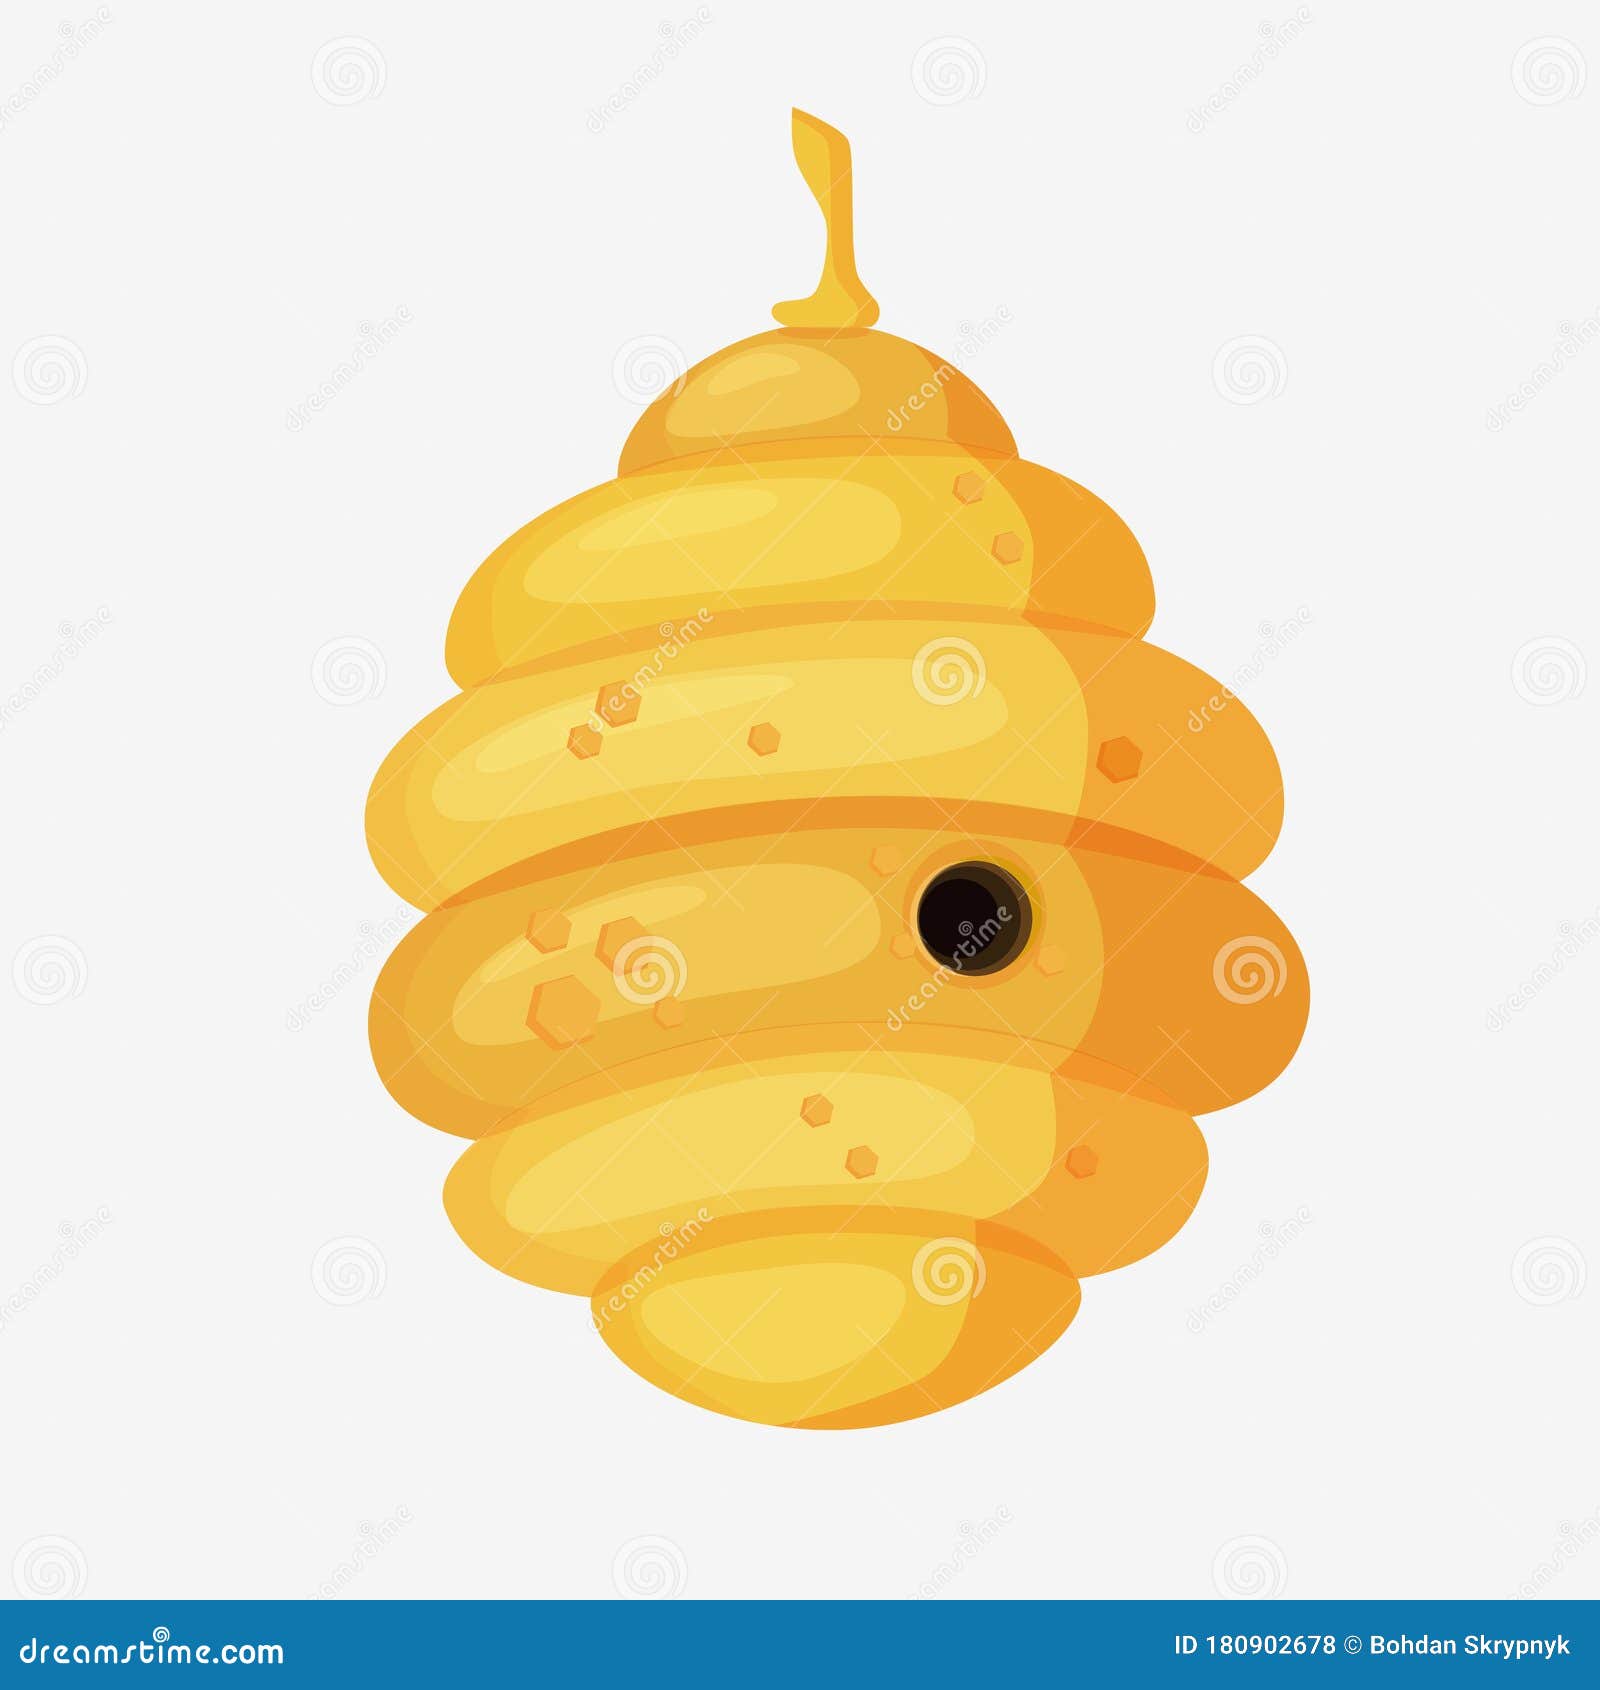 yellow bee hive in cartoon style.full of fresh honey